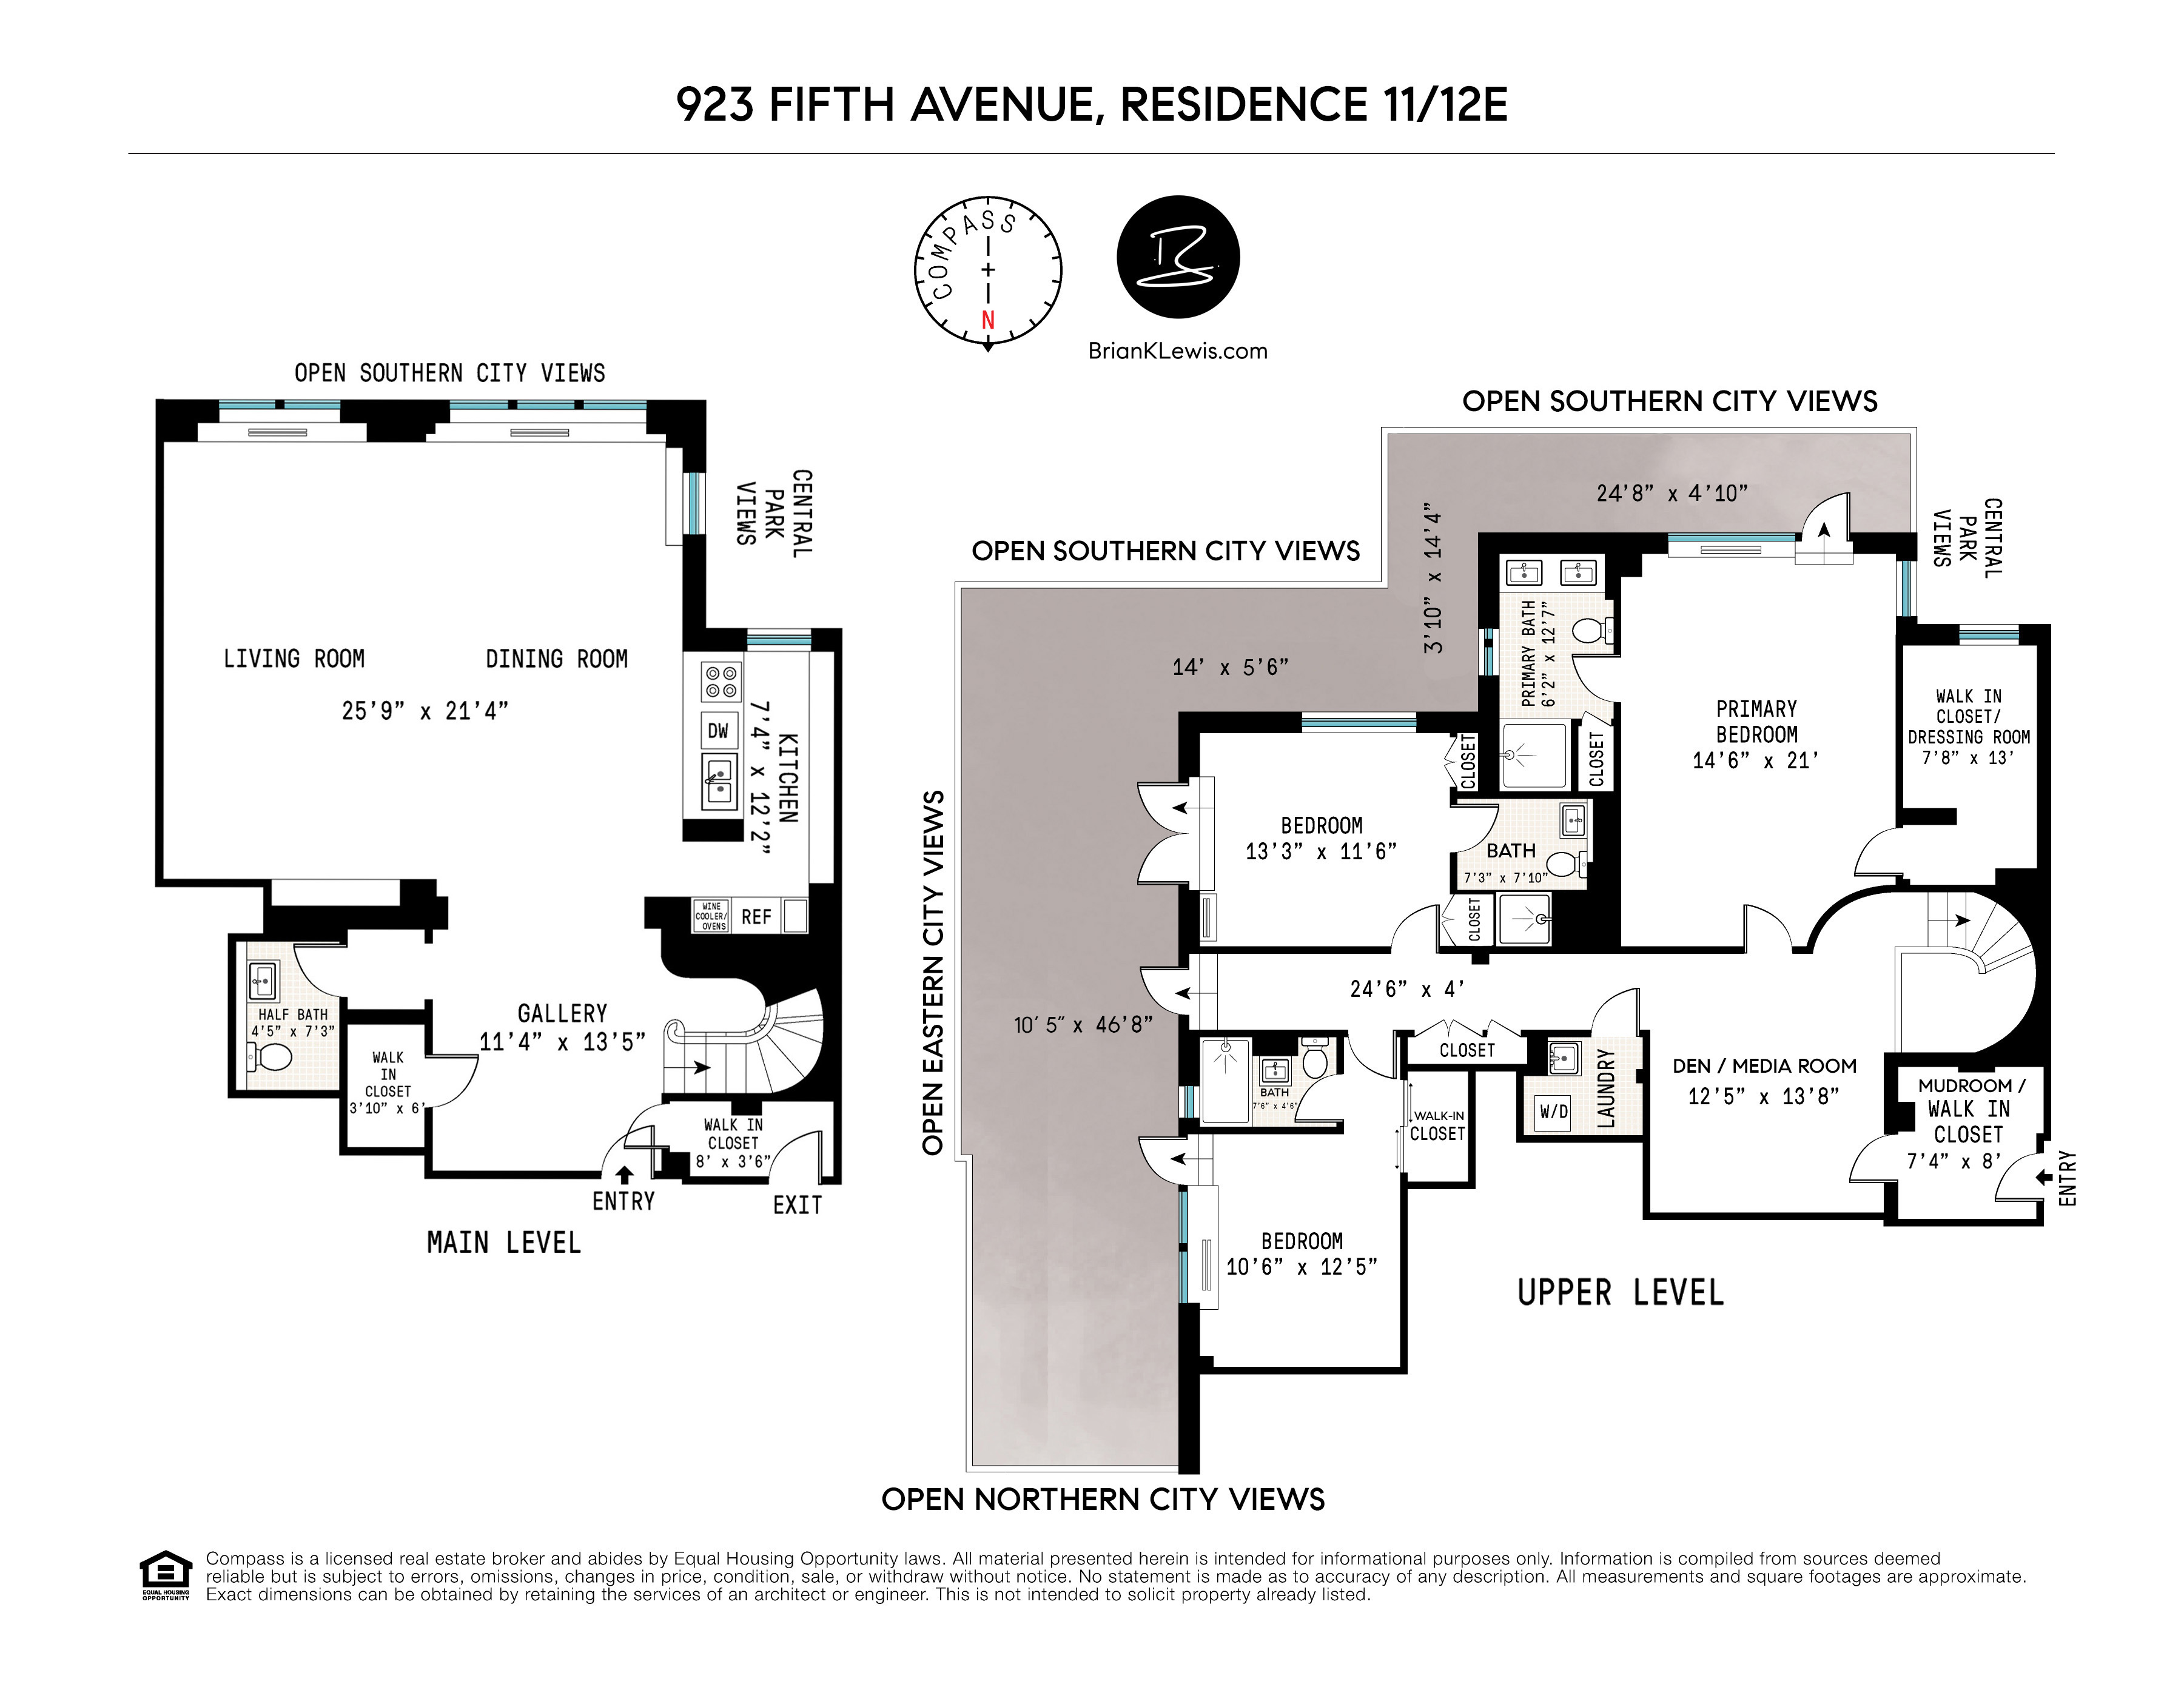 Floorplan for 923 5th Avenue, 11/12E